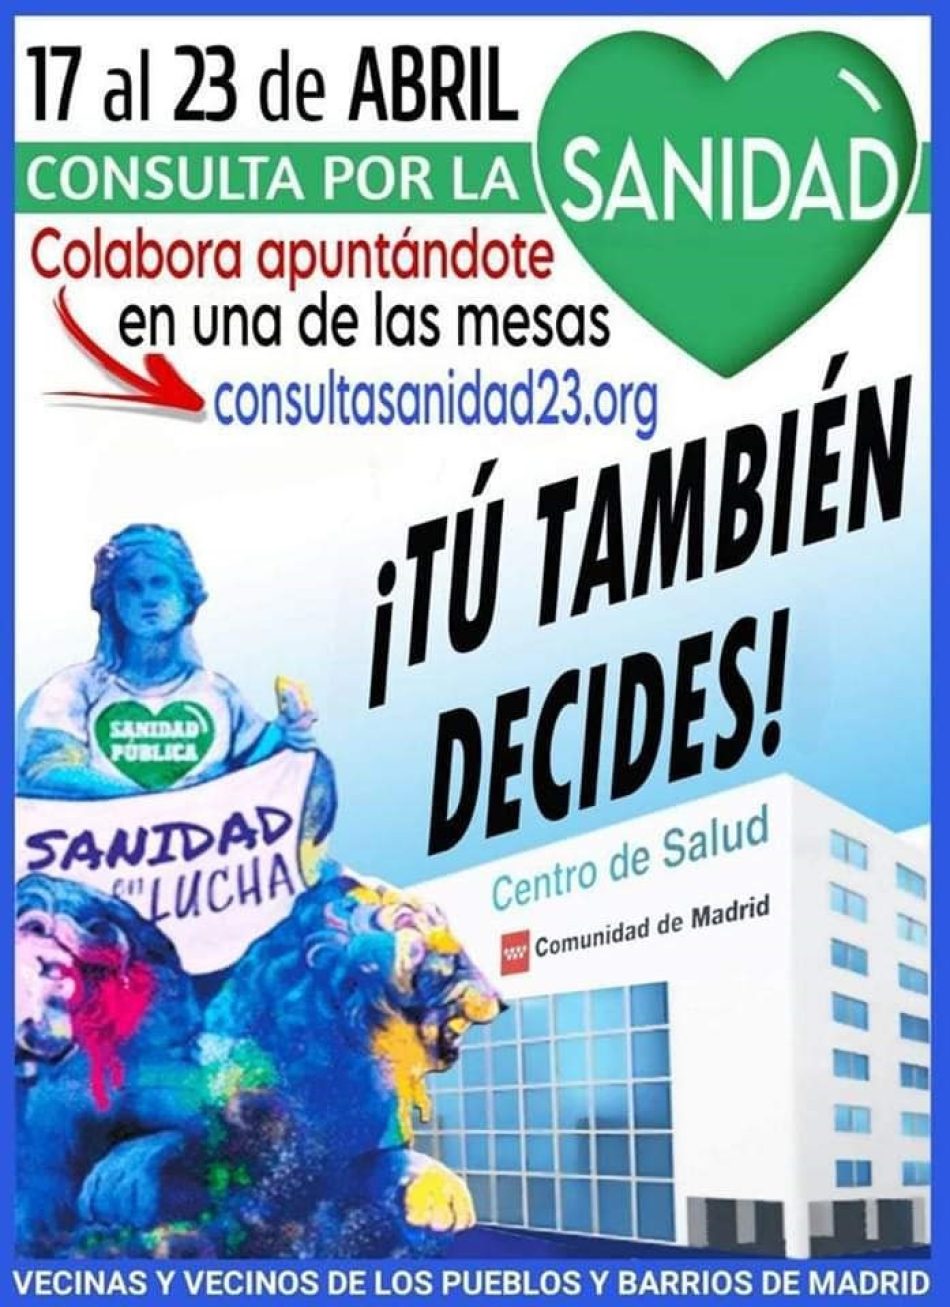 Espacio plural Vecinas y vecinos de los barrios y pueblos de Madrid convoca una consulta por la Sanidad entre los días 17 y 23 de abril